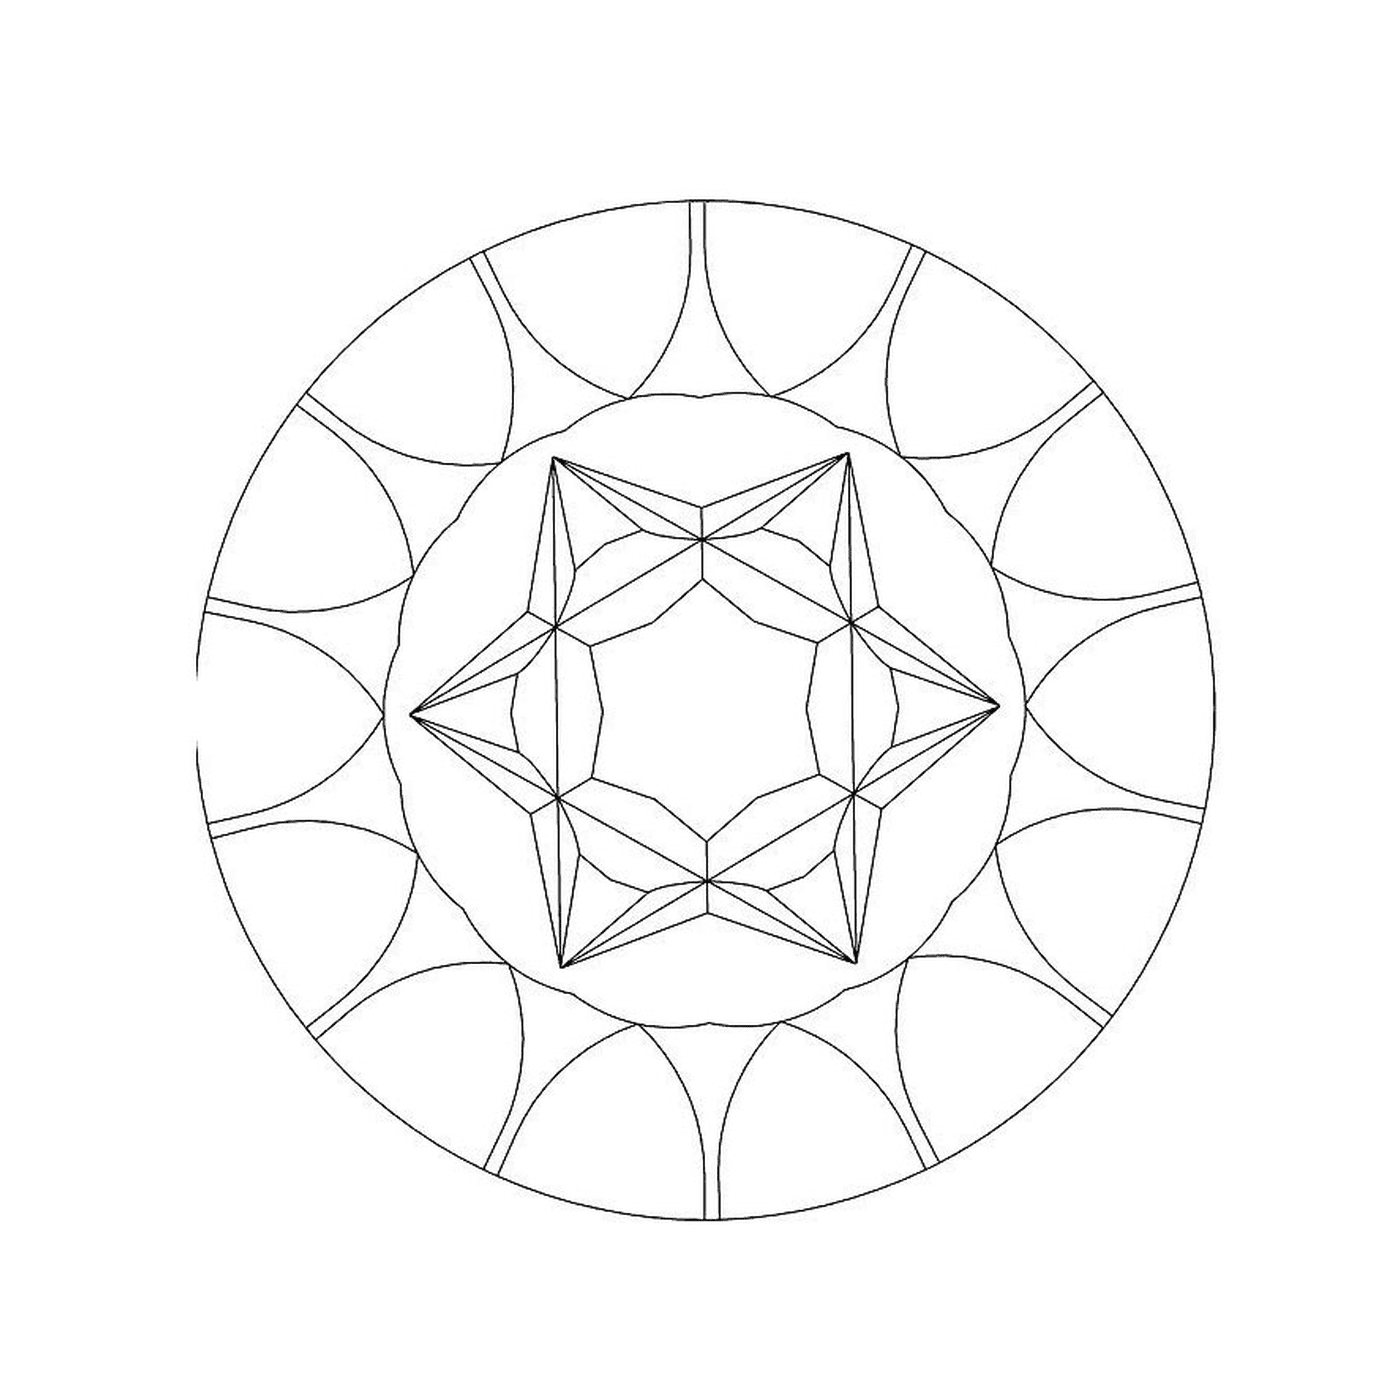  simples geométrica mandala 